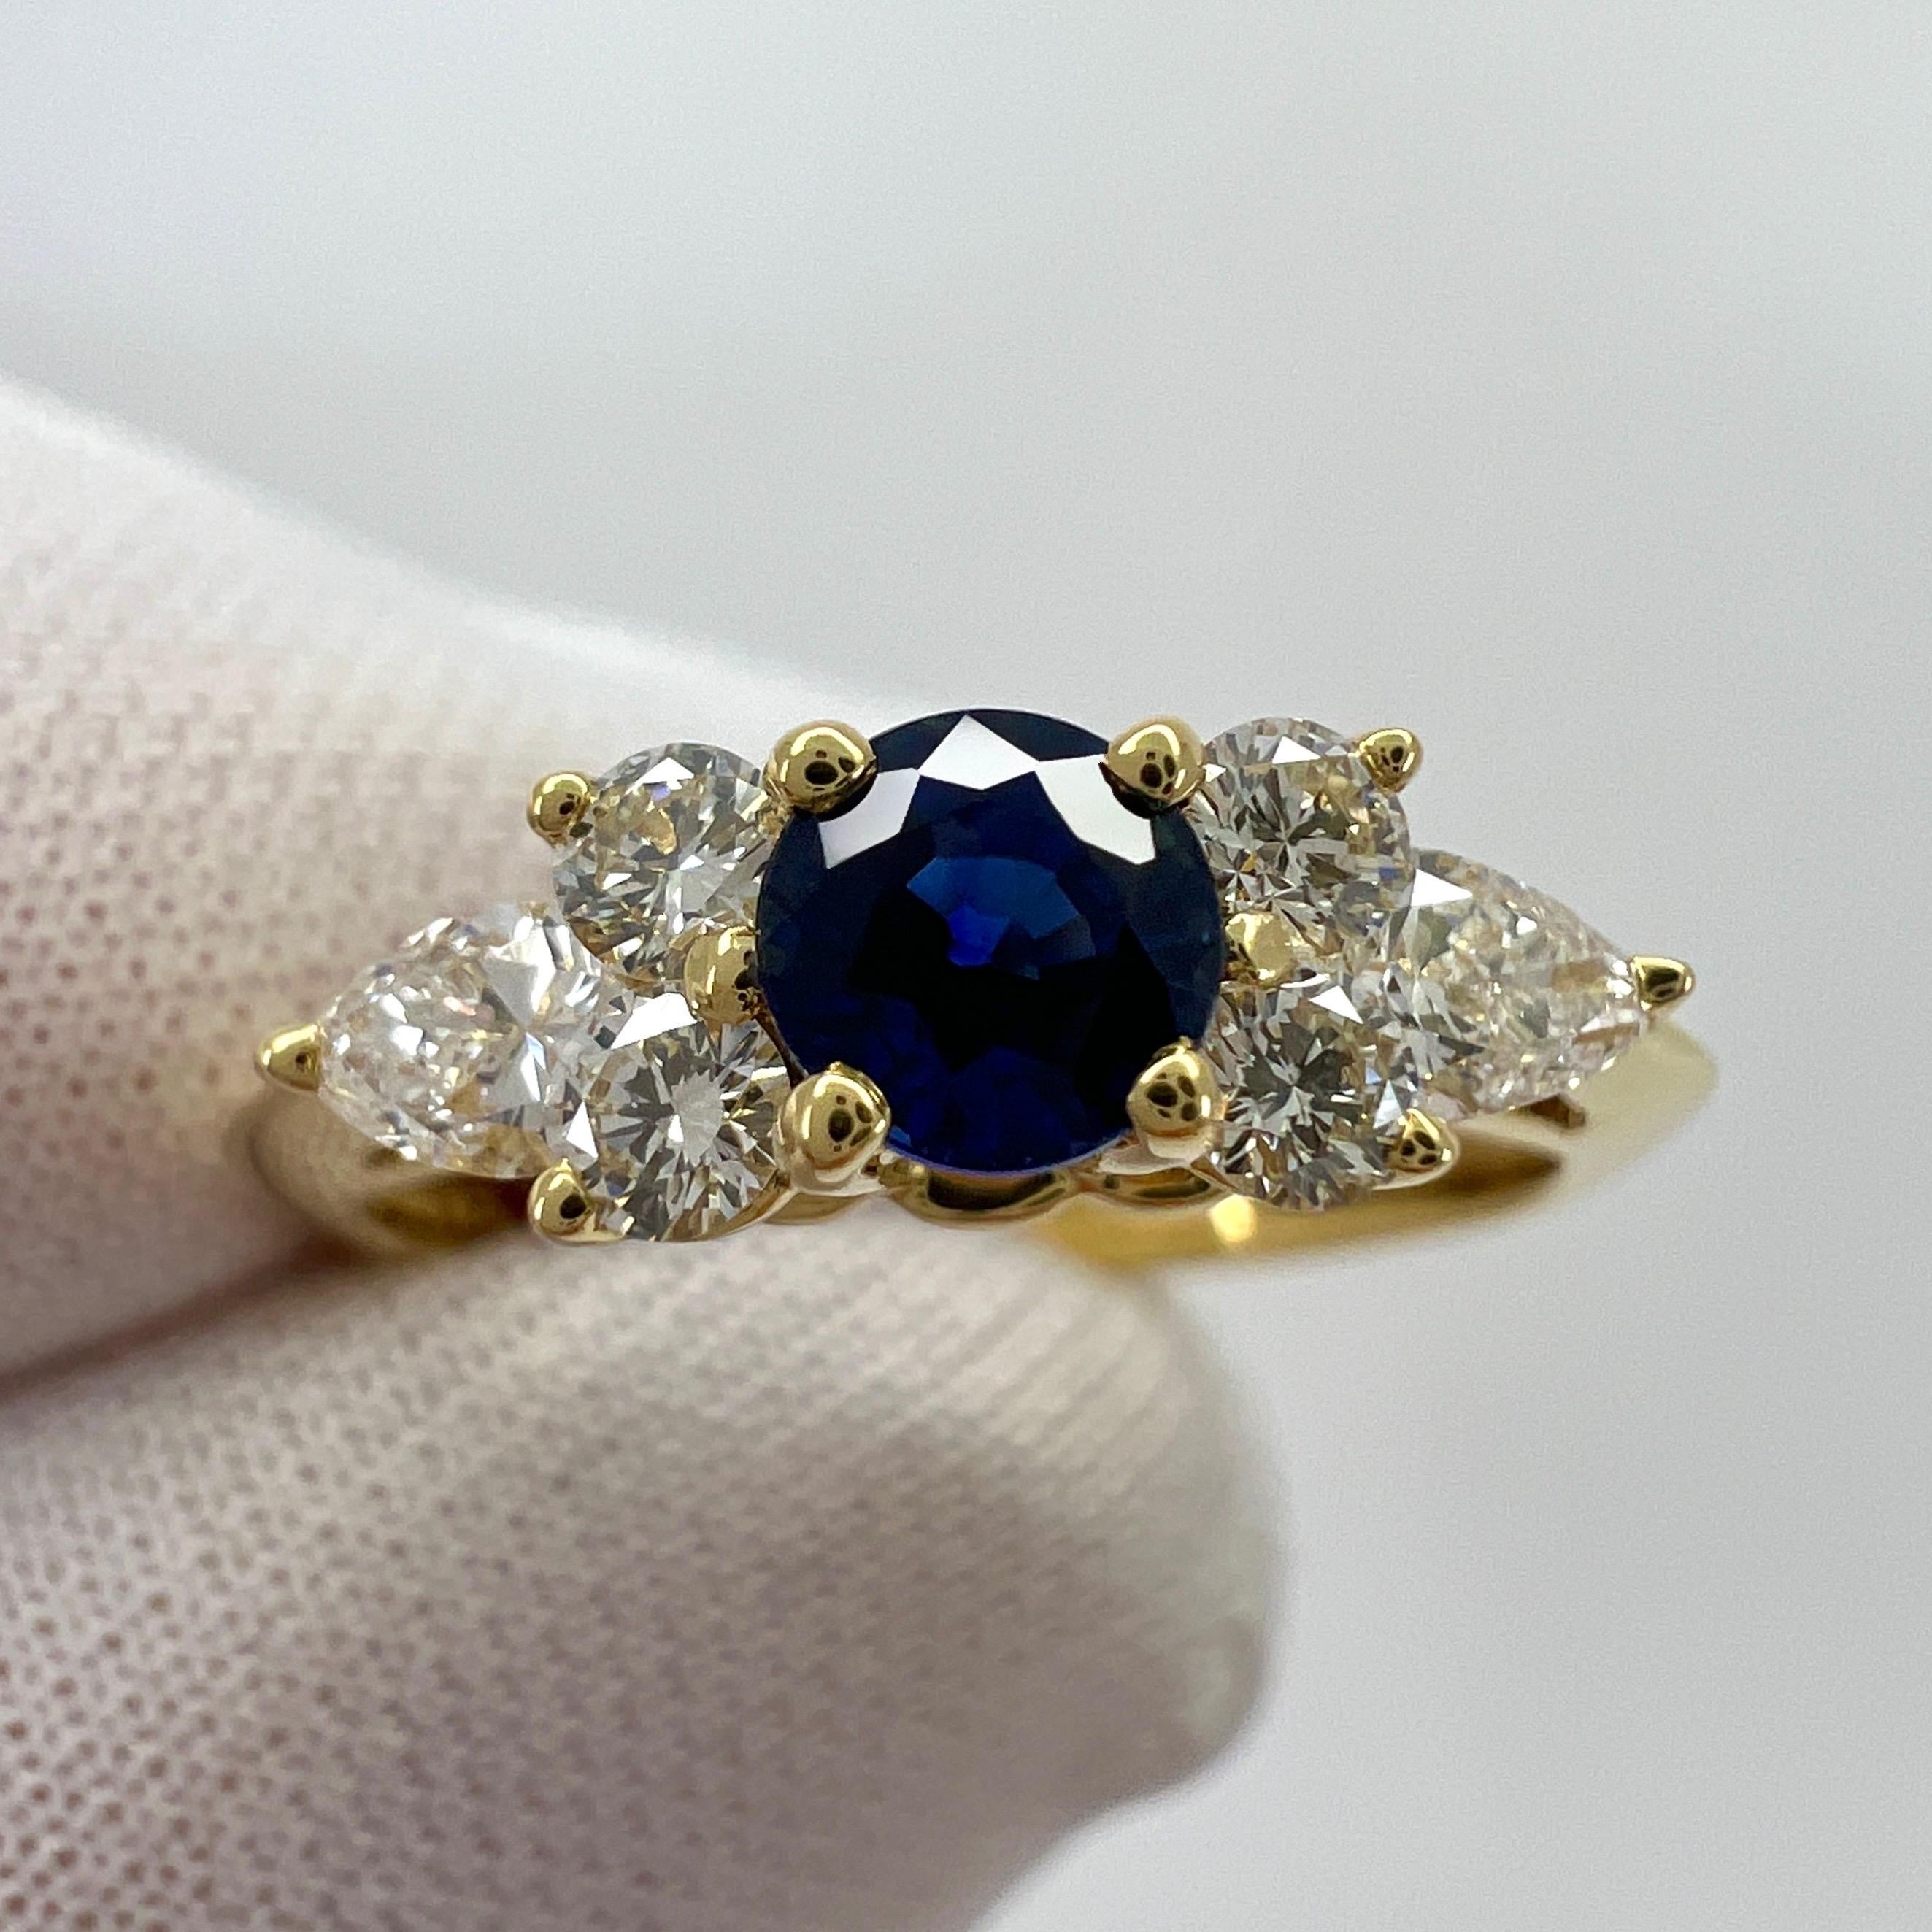 Seltene Tiffany & Co. Saphir & Diamant Butterblume 18k Gelbgold Ring.

Ein wunderschön gearbeiteter Ring aus Gelbgold, besetzt mit einem atemberaubenden 4 mm großen, tiefblauen Saphir im Rundschliff. Hervorragende Farbe, Klarheit und Schliff.